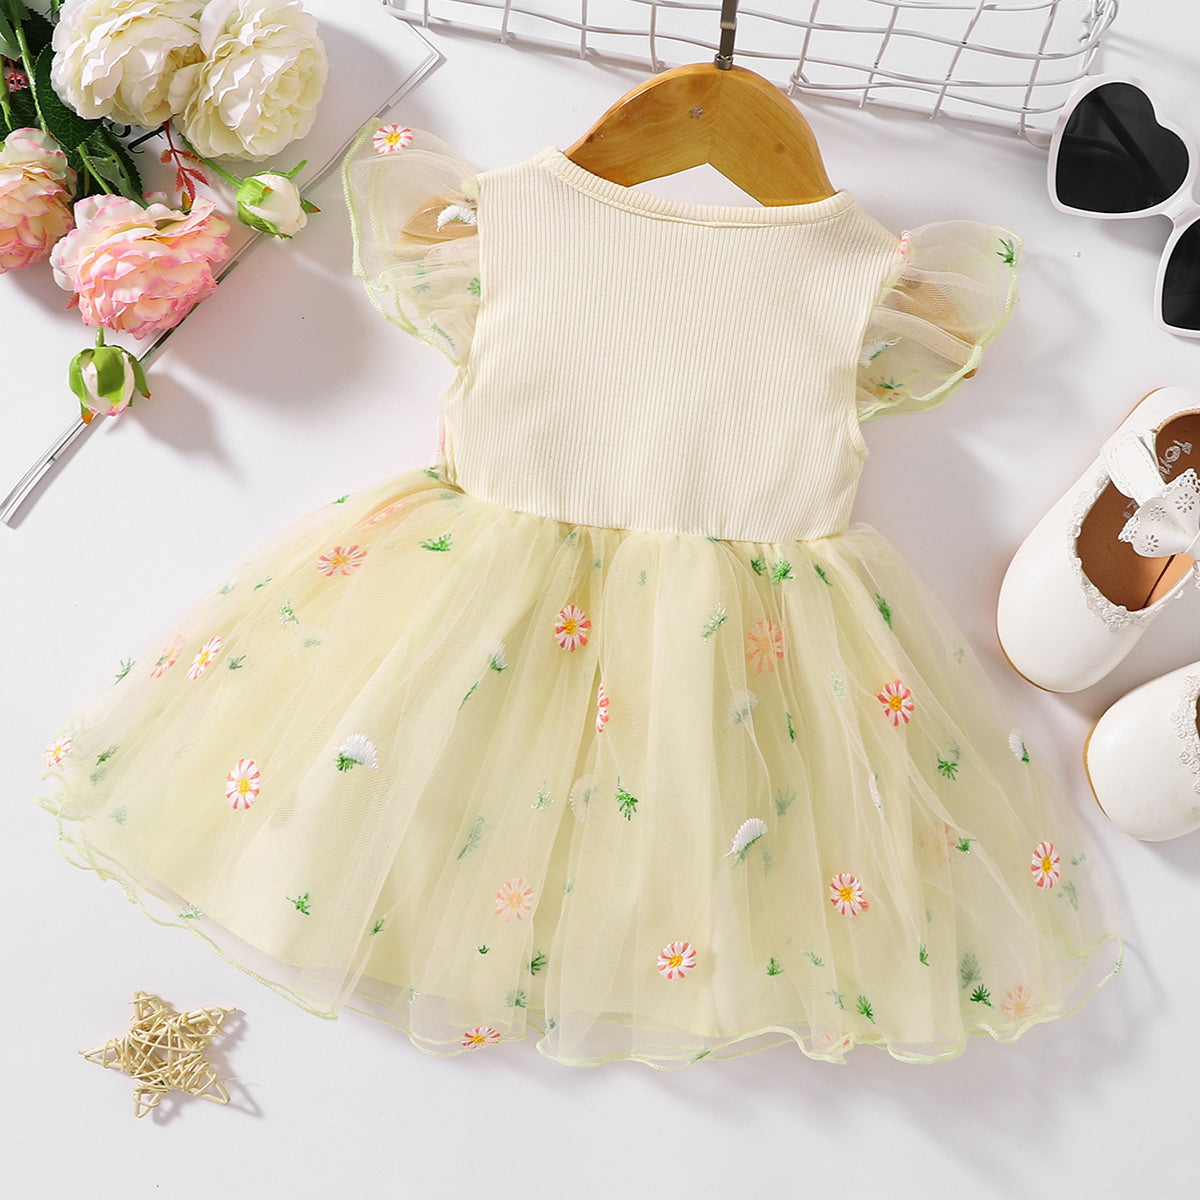 Baby & Toddler Girls Easter Dress